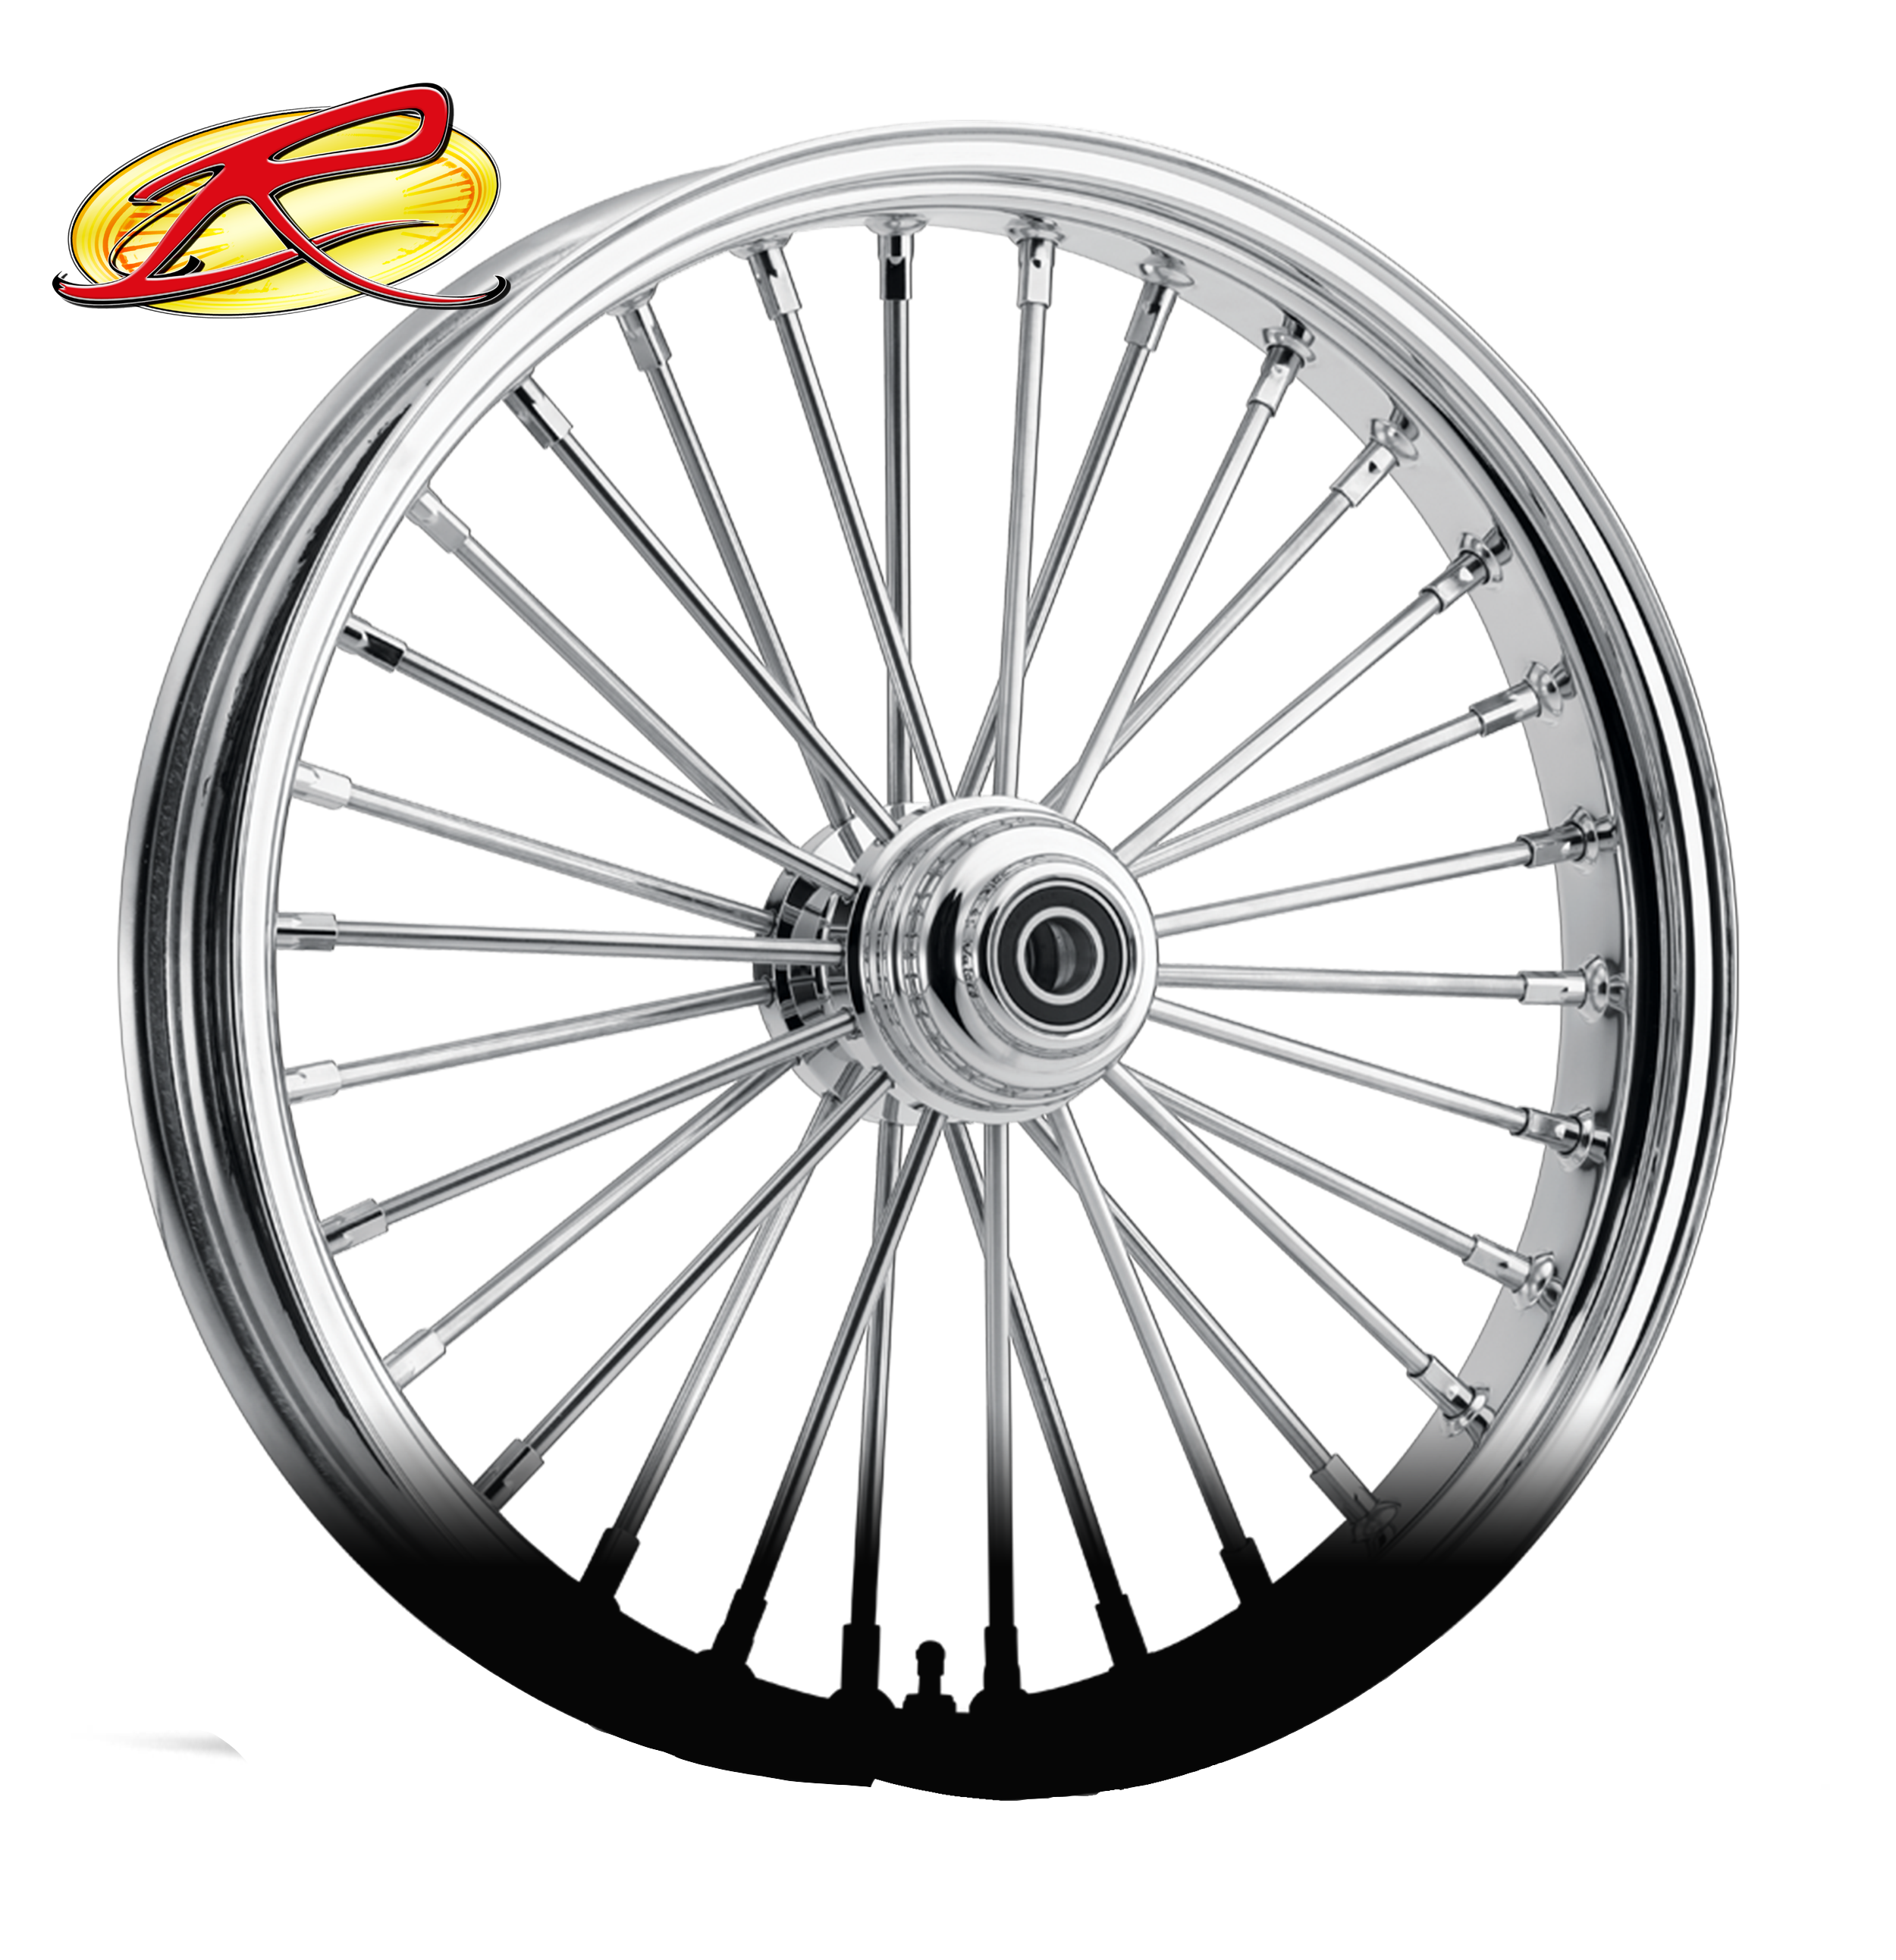 Fat 30 Spoke Motorcycle Wheels